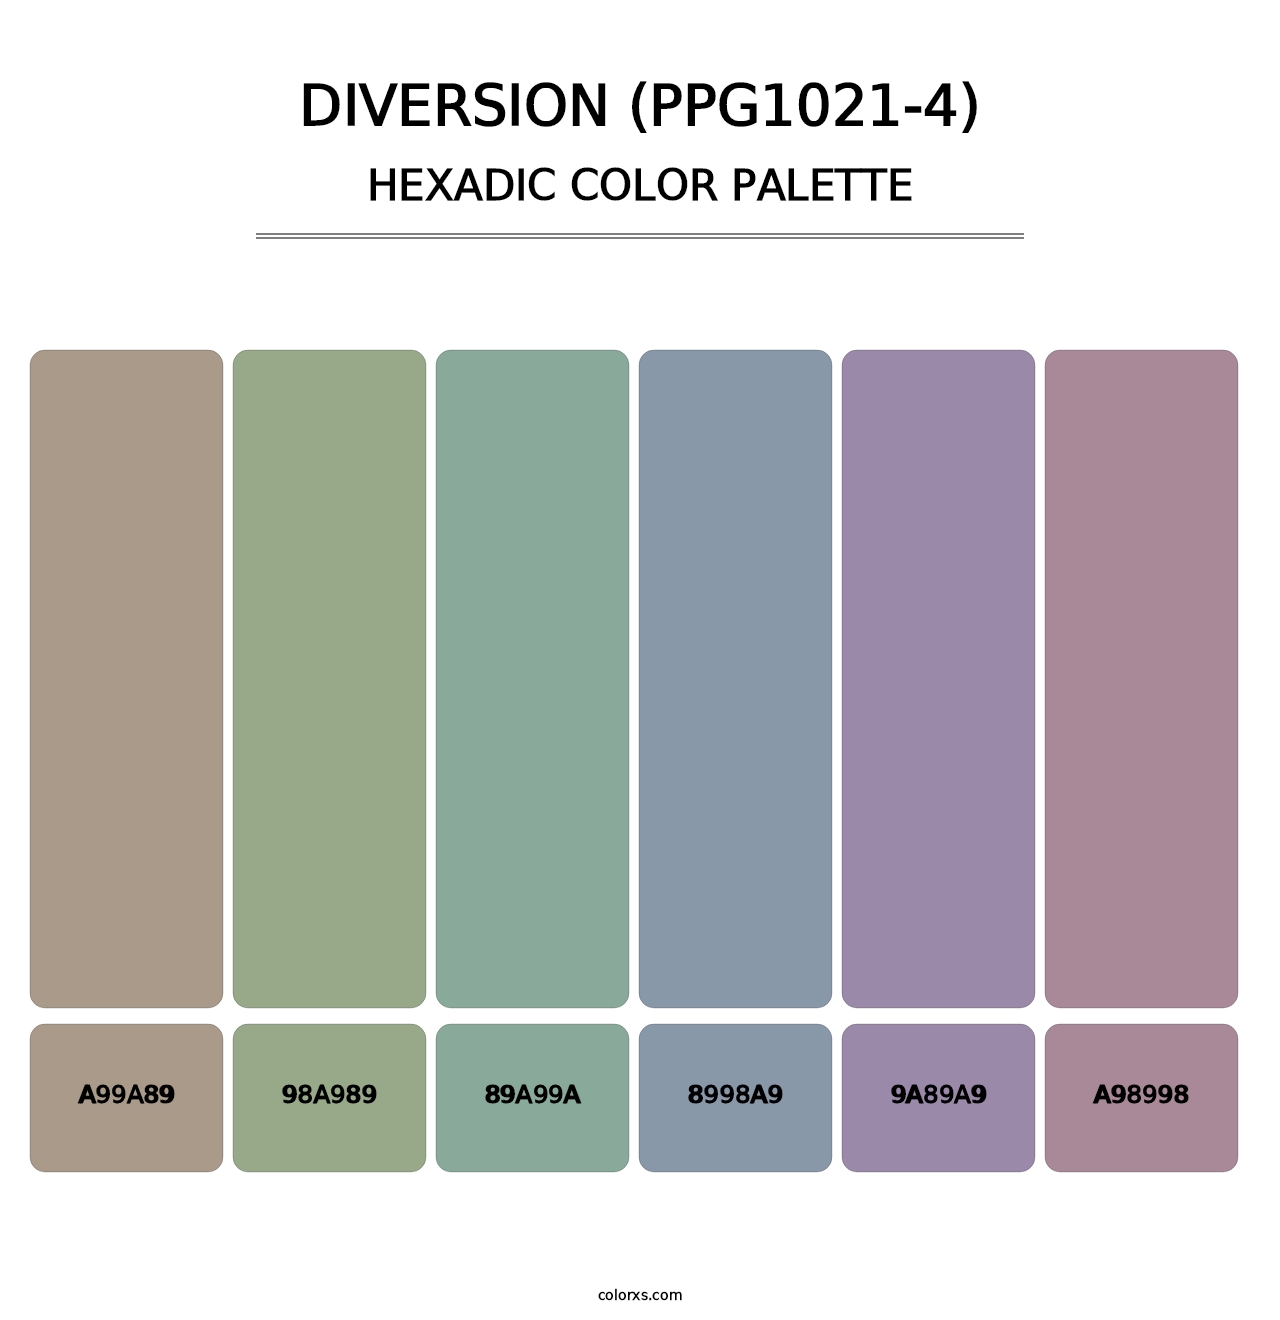 Diversion (PPG1021-4) - Hexadic Color Palette